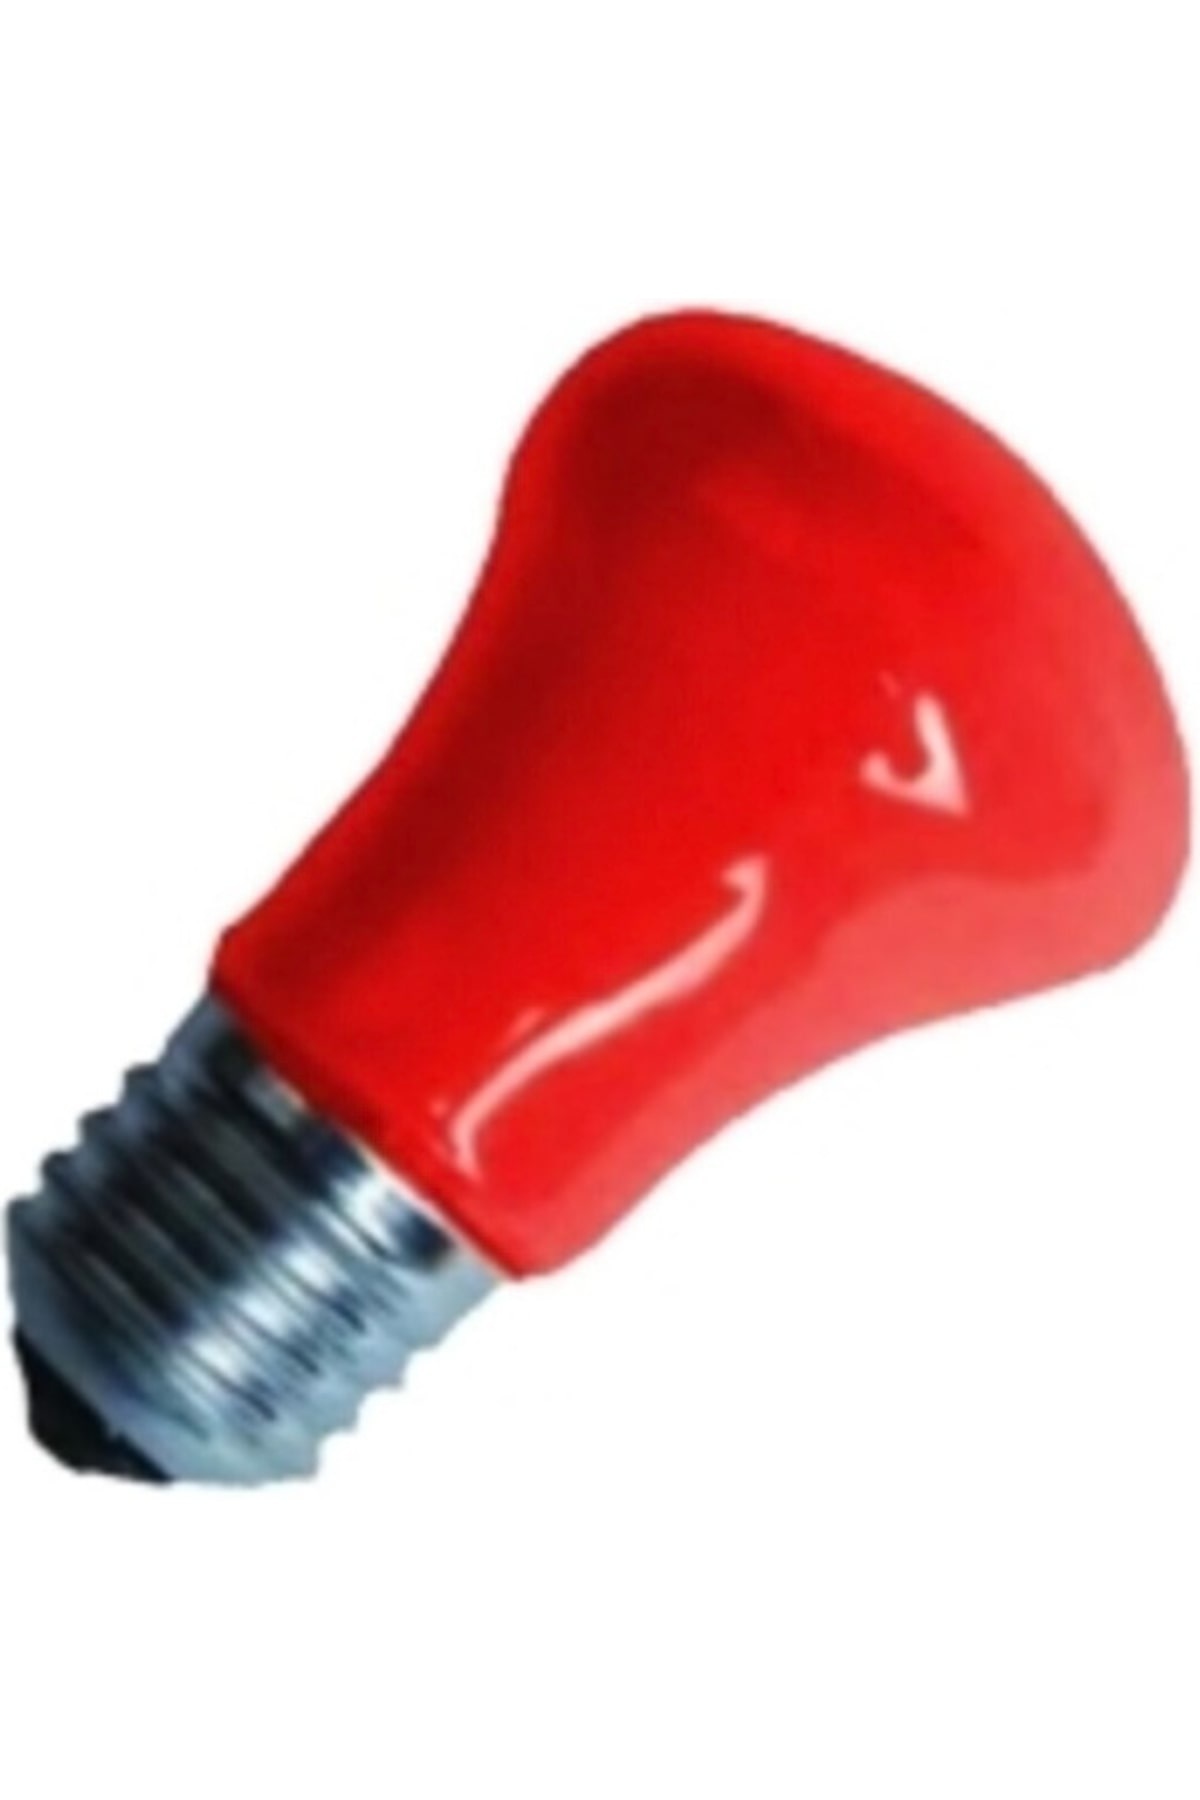 İtalyano Mantar Kırmızı Gece Lambası Ampul 10W E27*10X60 - 10-0622 - 2345